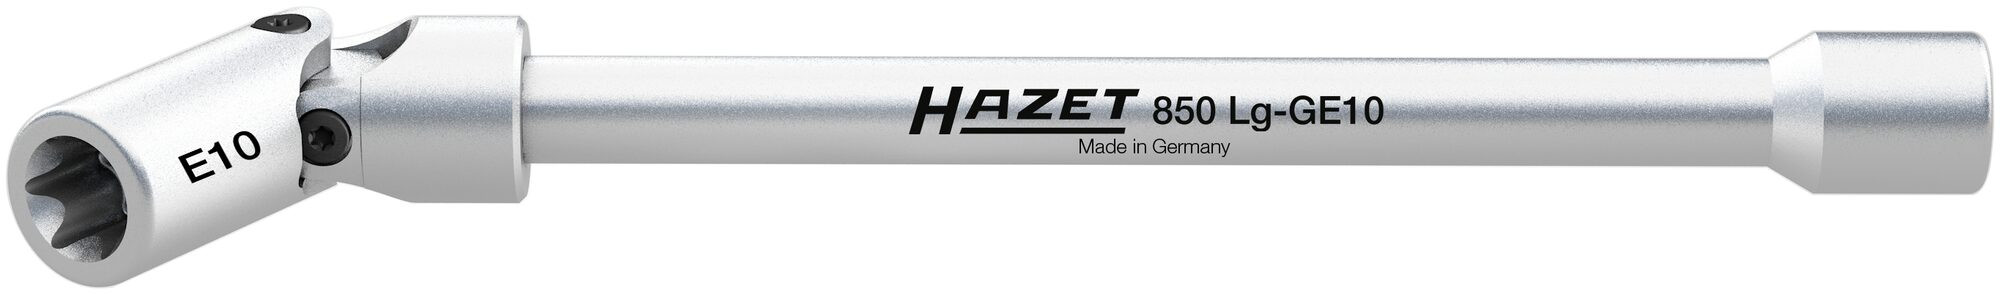 HAZET Torx lednøgle 1/4 E10 150 mm (850LG-GE10)